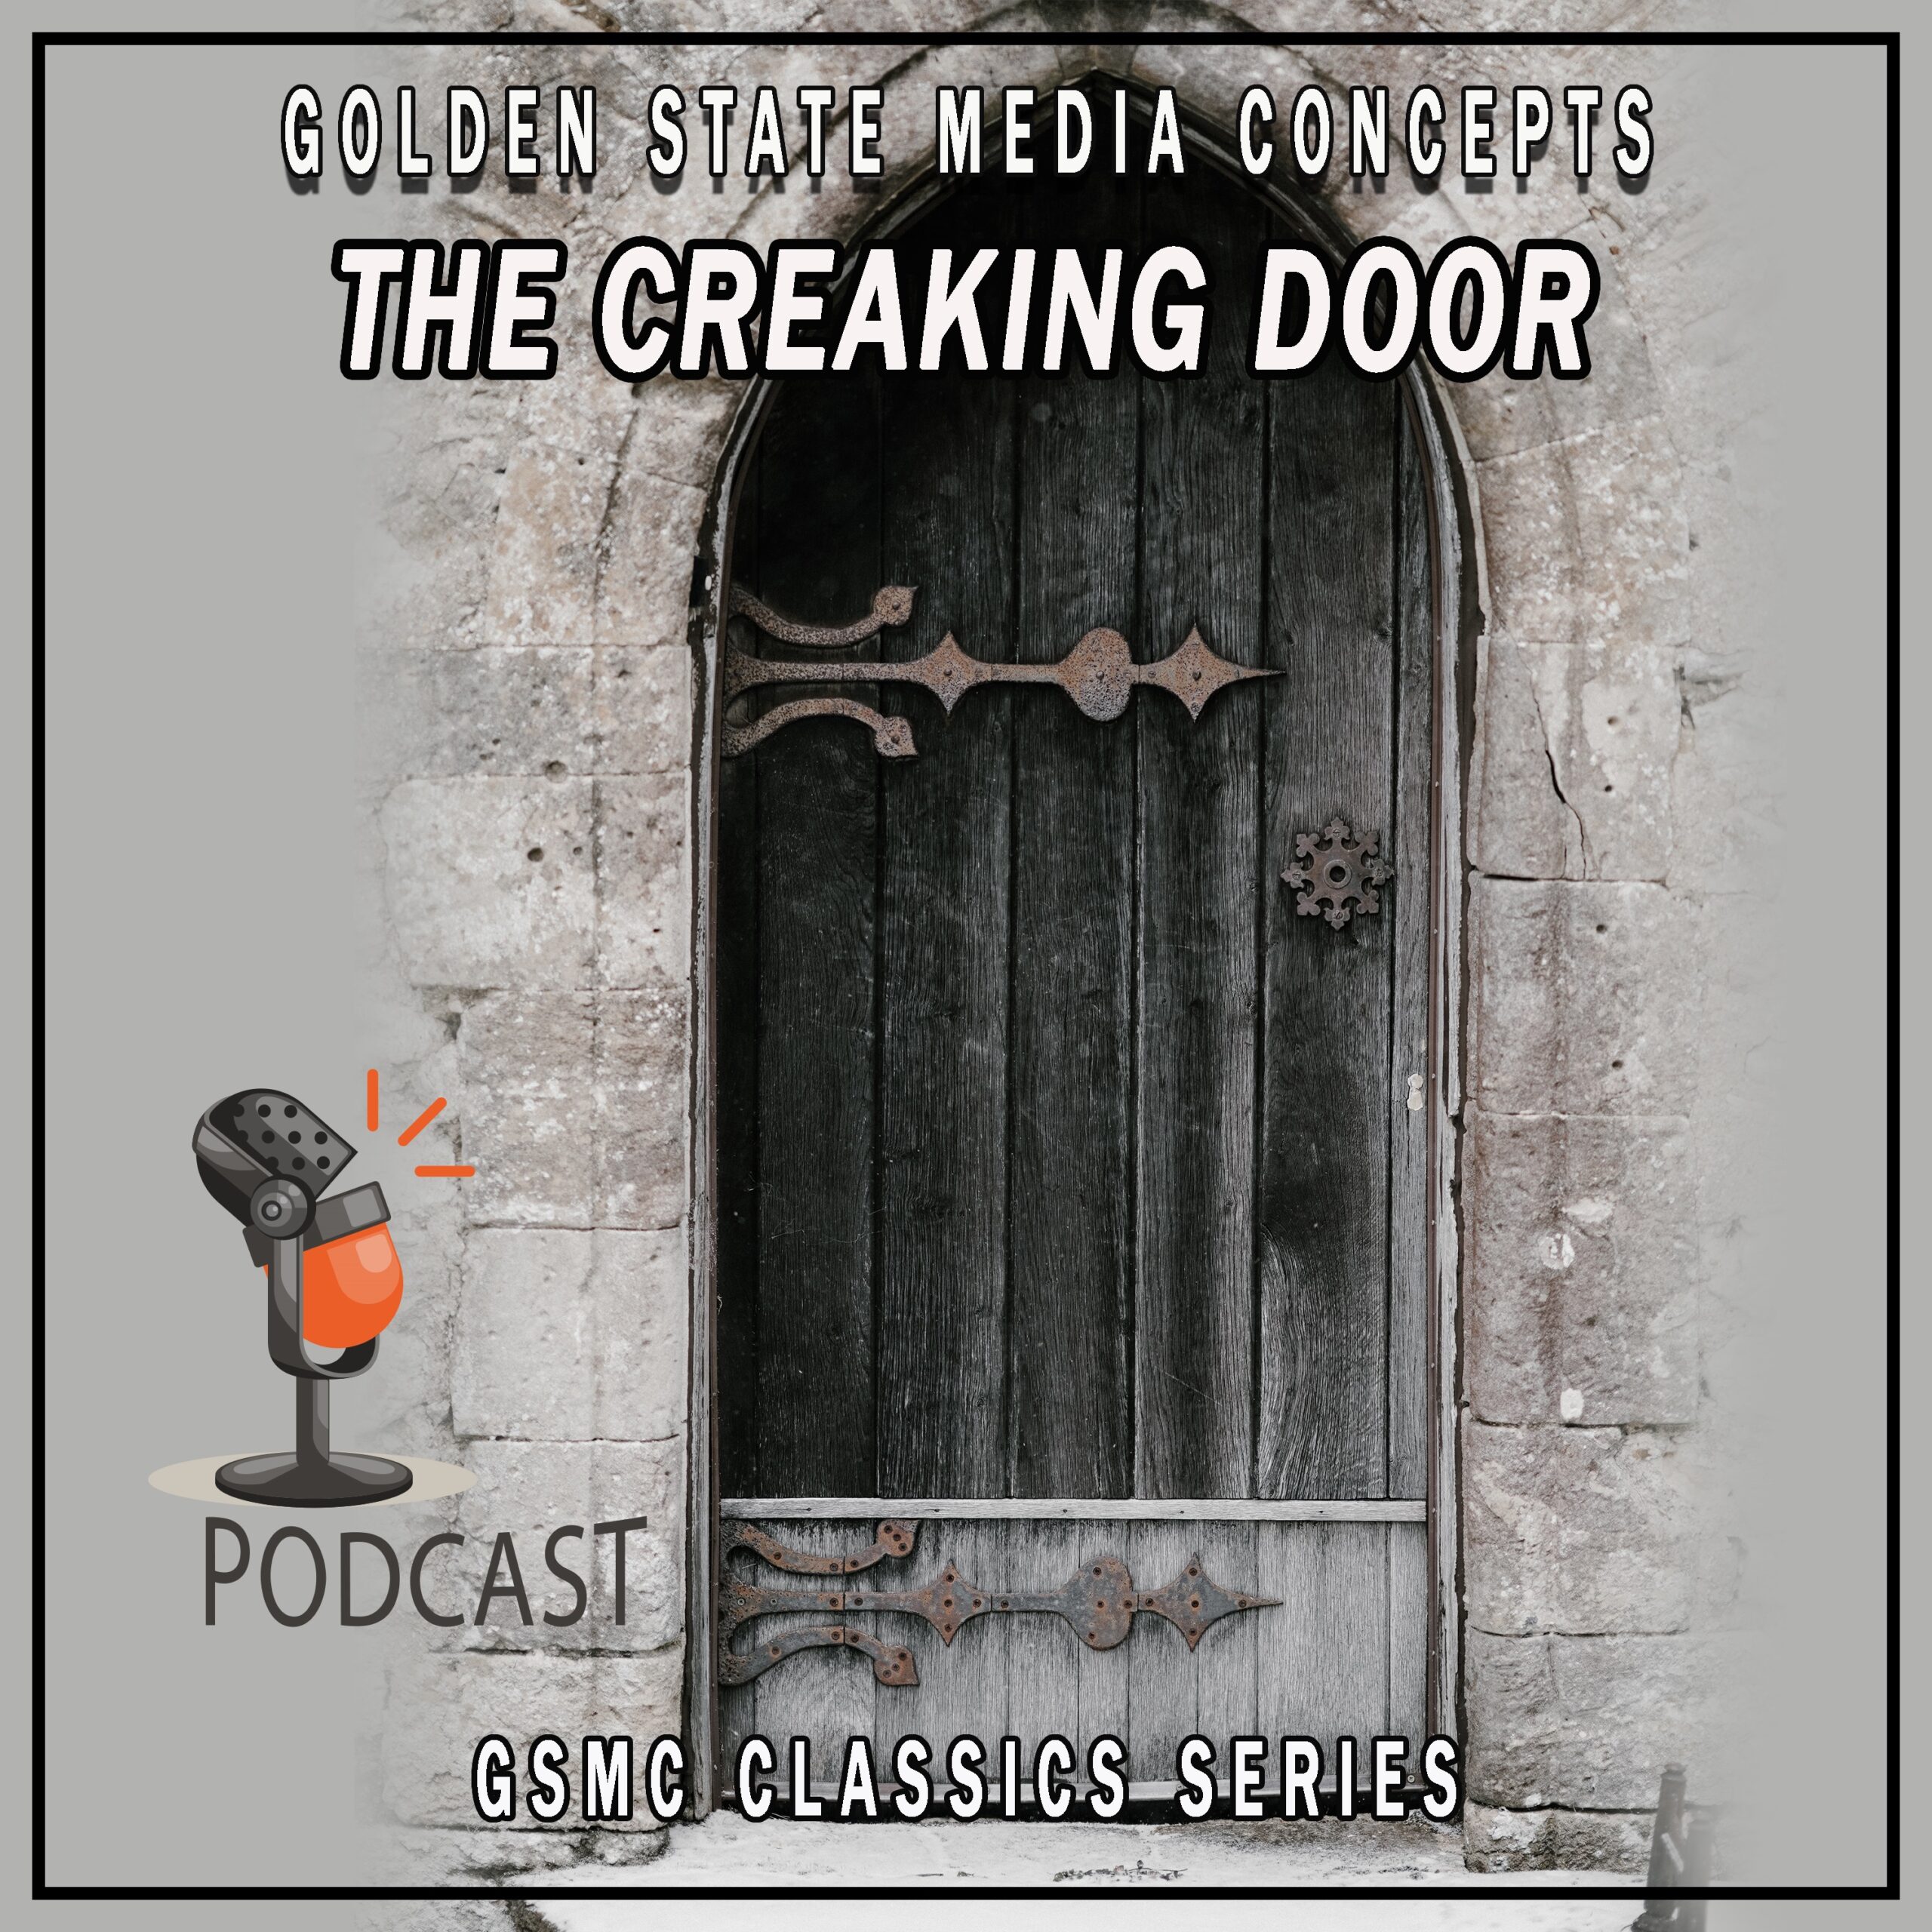 GSMC Classics: The Creaking Door